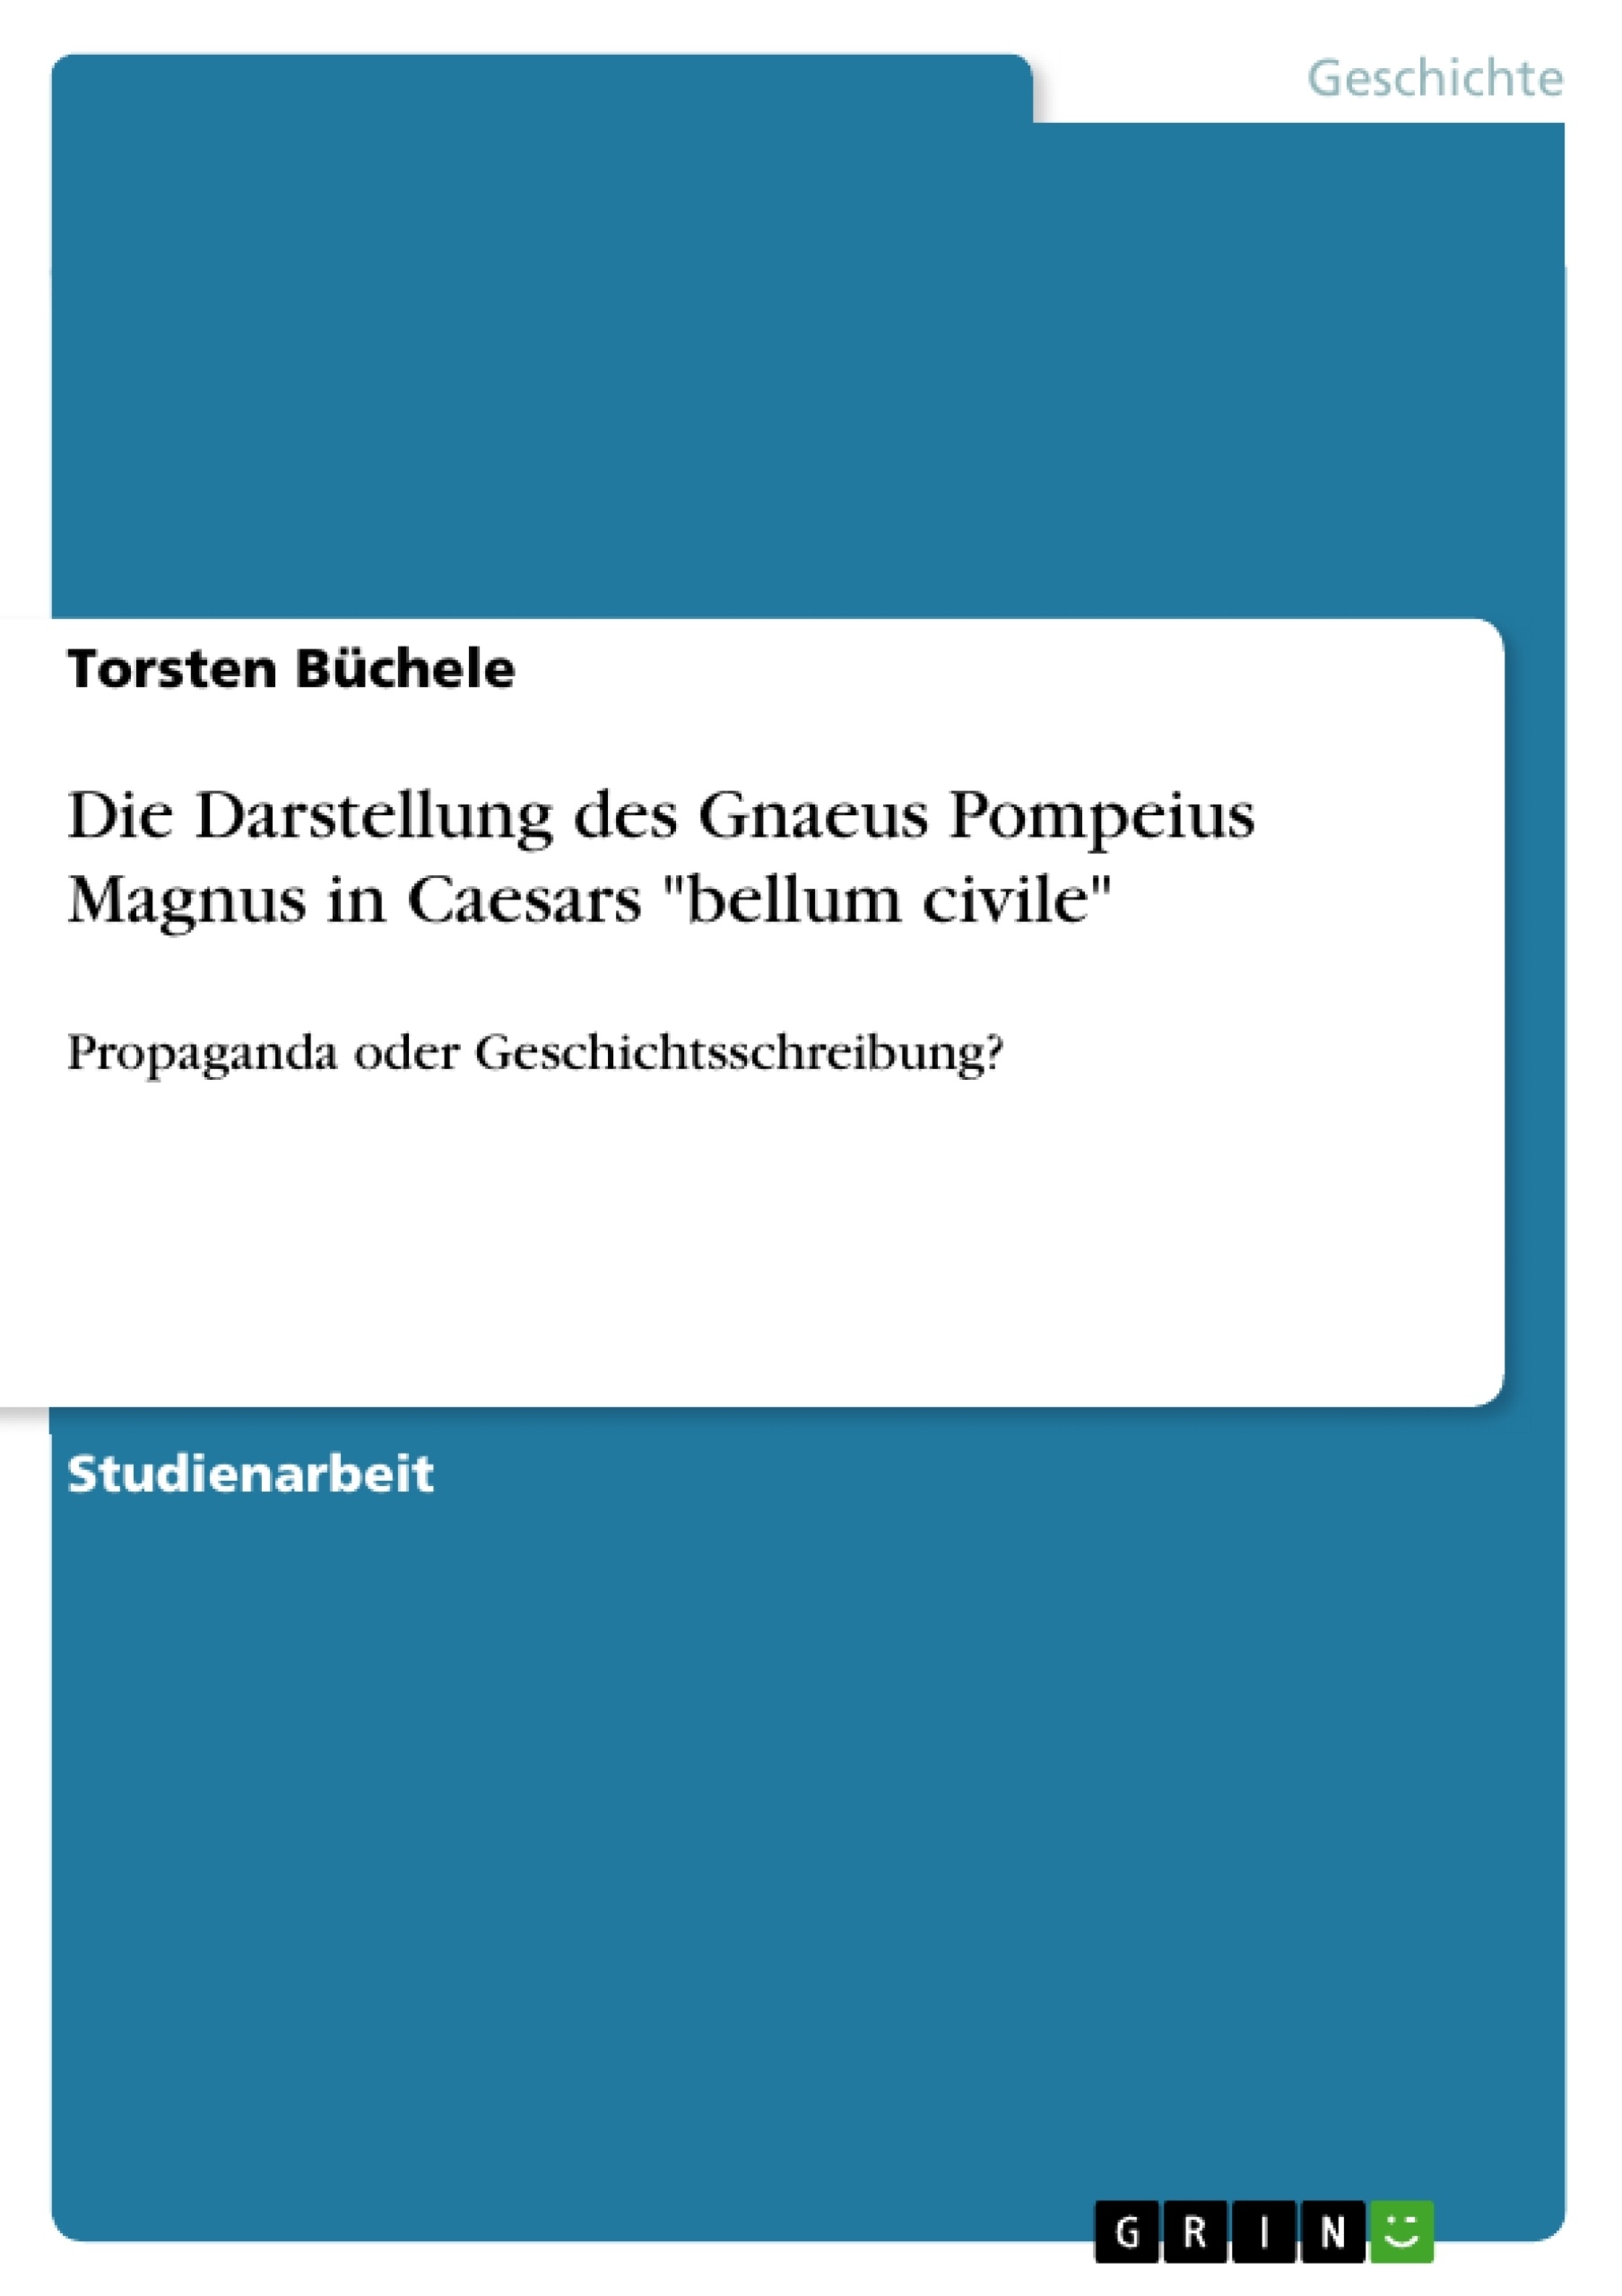 Título: Die Darstellung des Gnaeus Pompeius Magnus in Caesars "bellum civile"